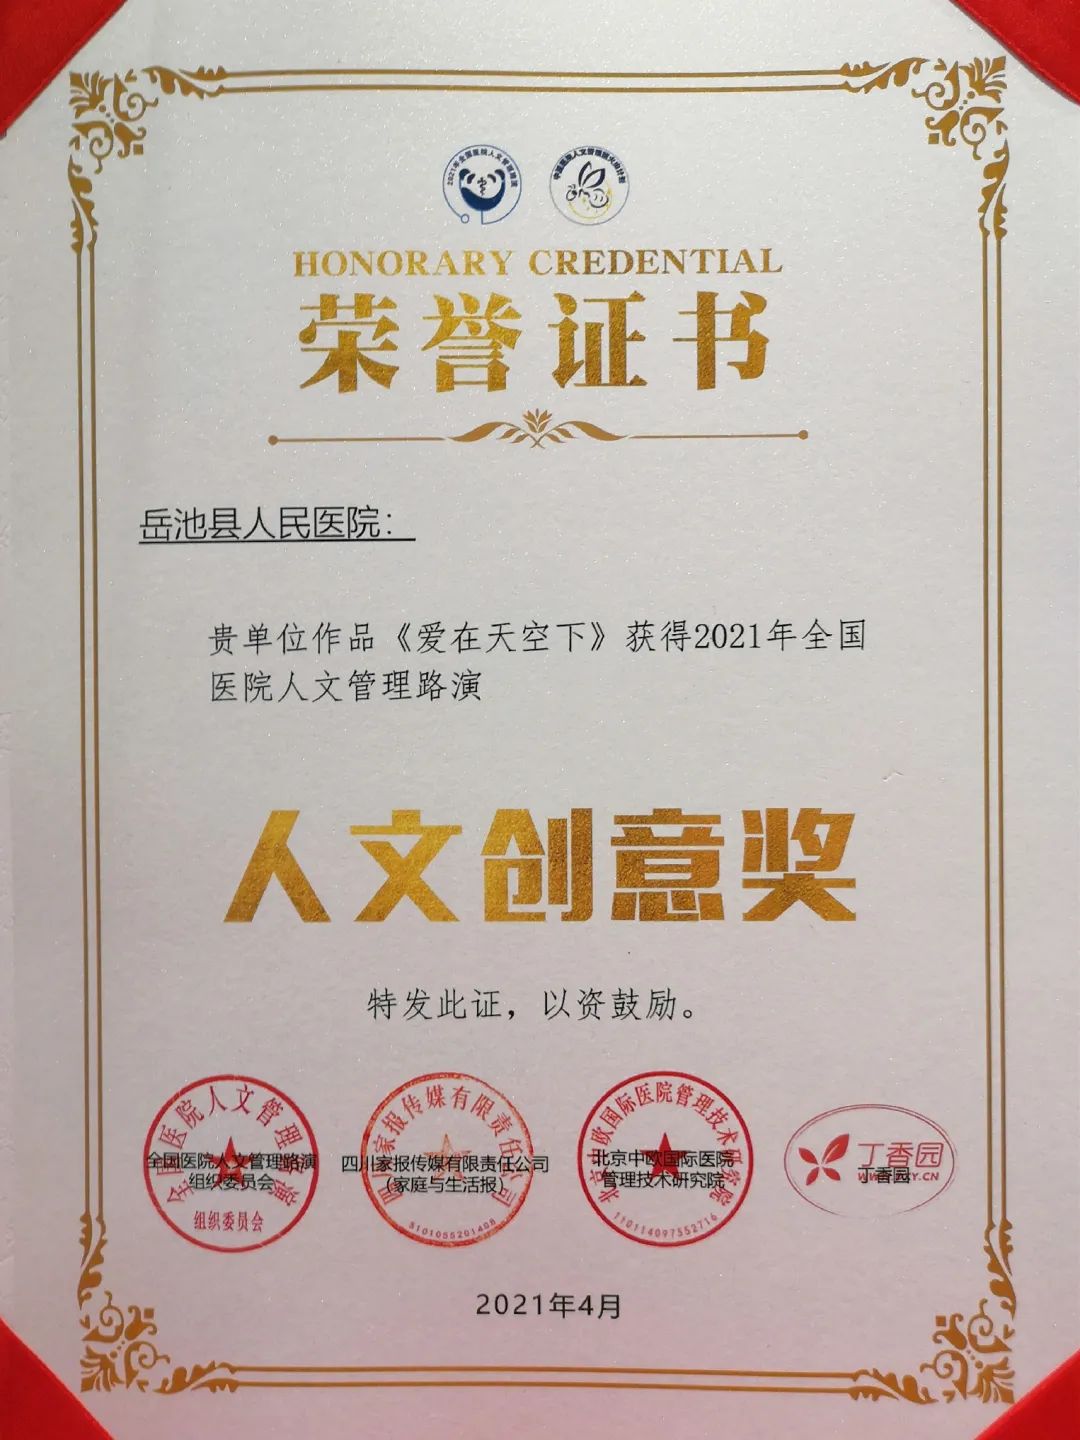 岳池县人民医院在 2021 年全国医院人文管理路演大赛中荣获两大奖项